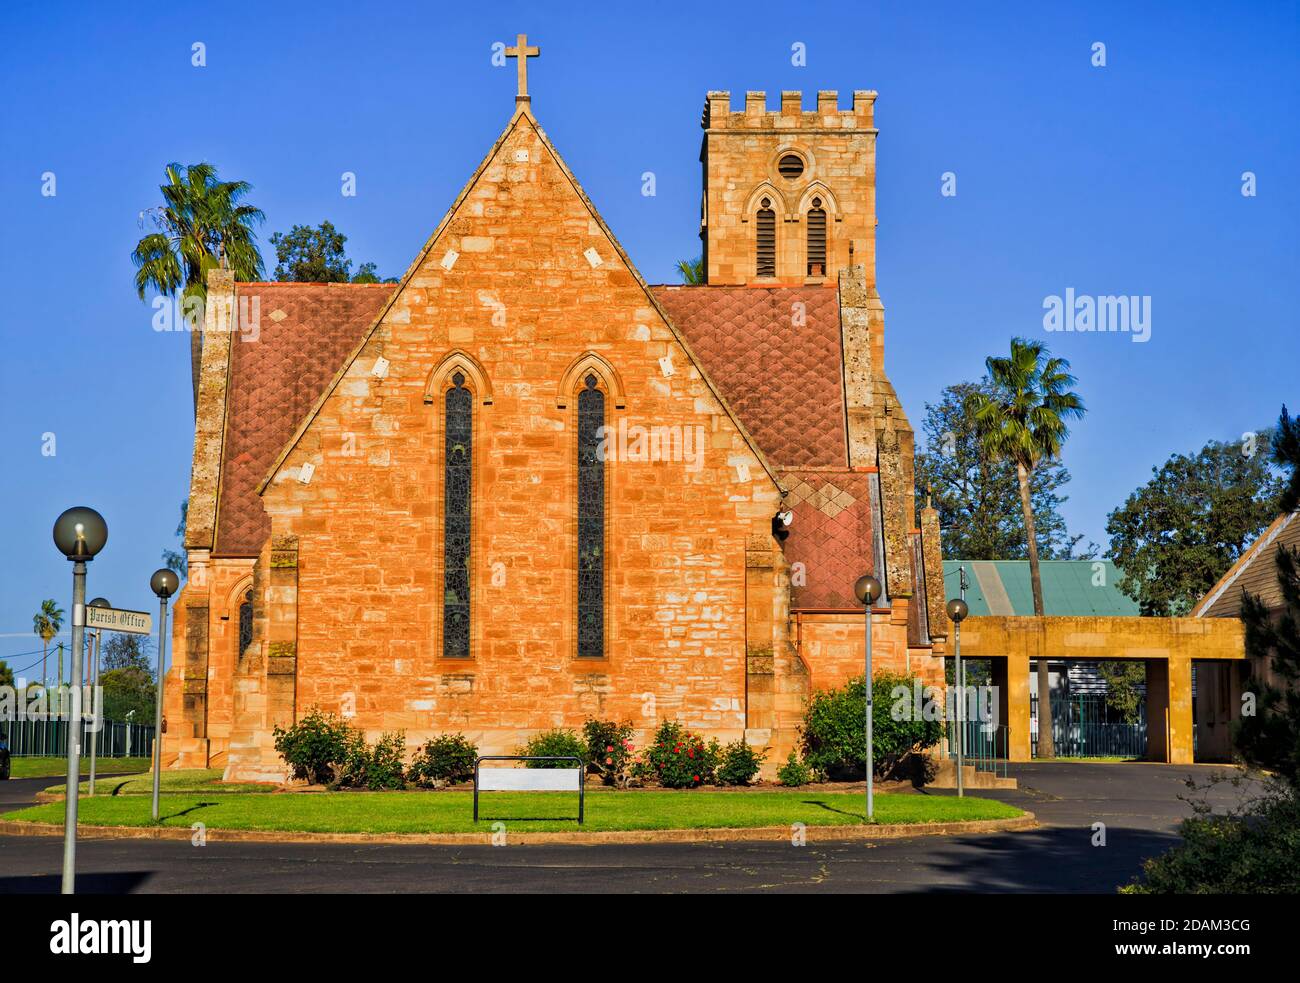 Edificio storico in pietra arenaria della chiesa cattolica nella città australiana di Dubbo. Foto Stock